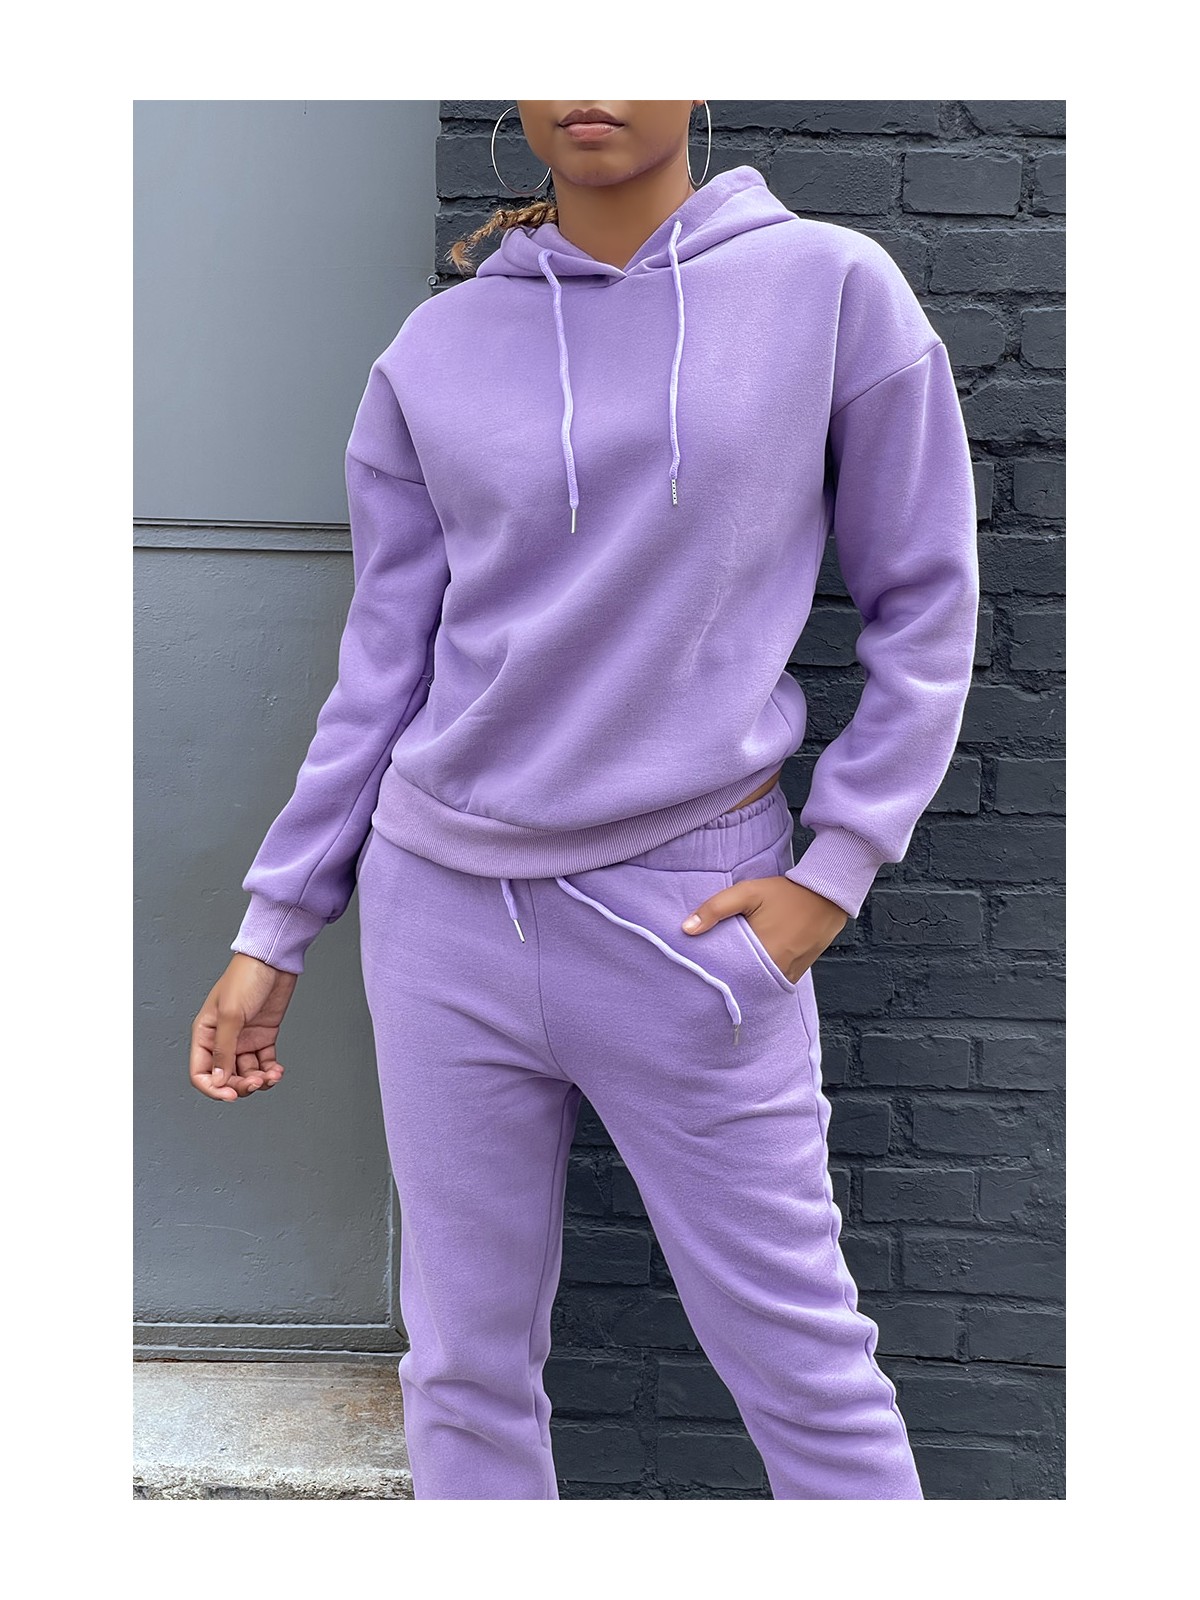 Ensemble violet 3 pièces jogging chaud et confortable et sur chemise oversize hyper tendance - 3